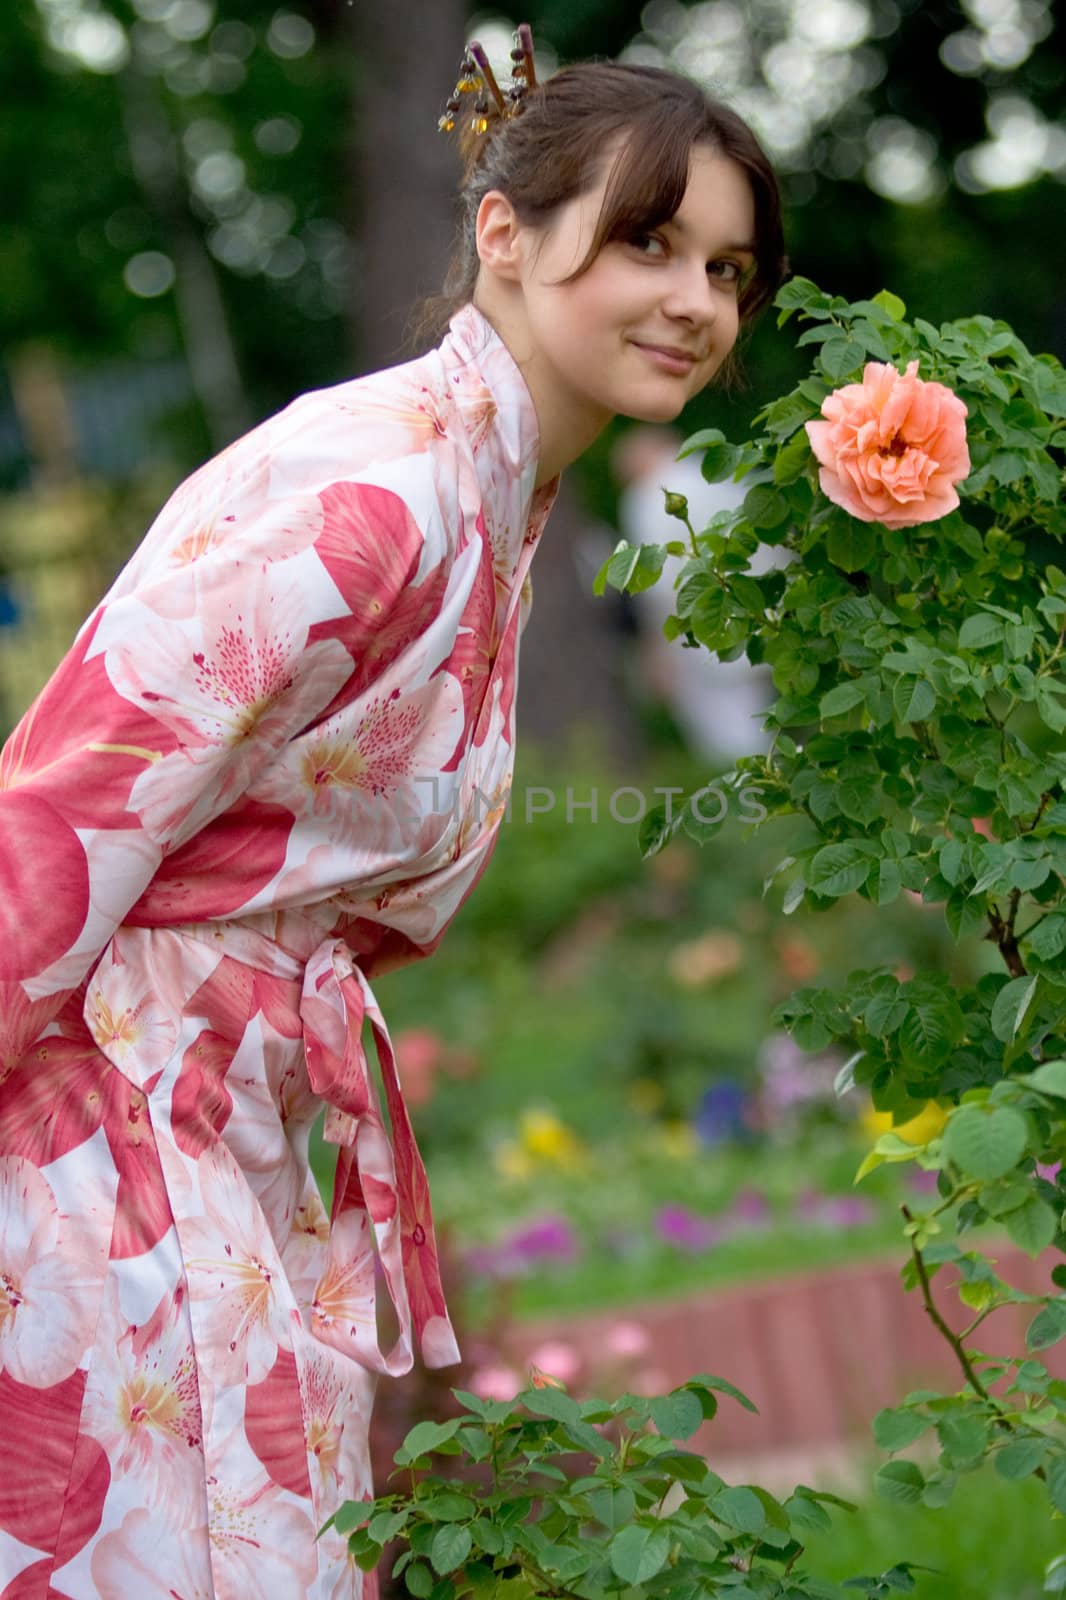 Girl in a flower yukata by foaloce